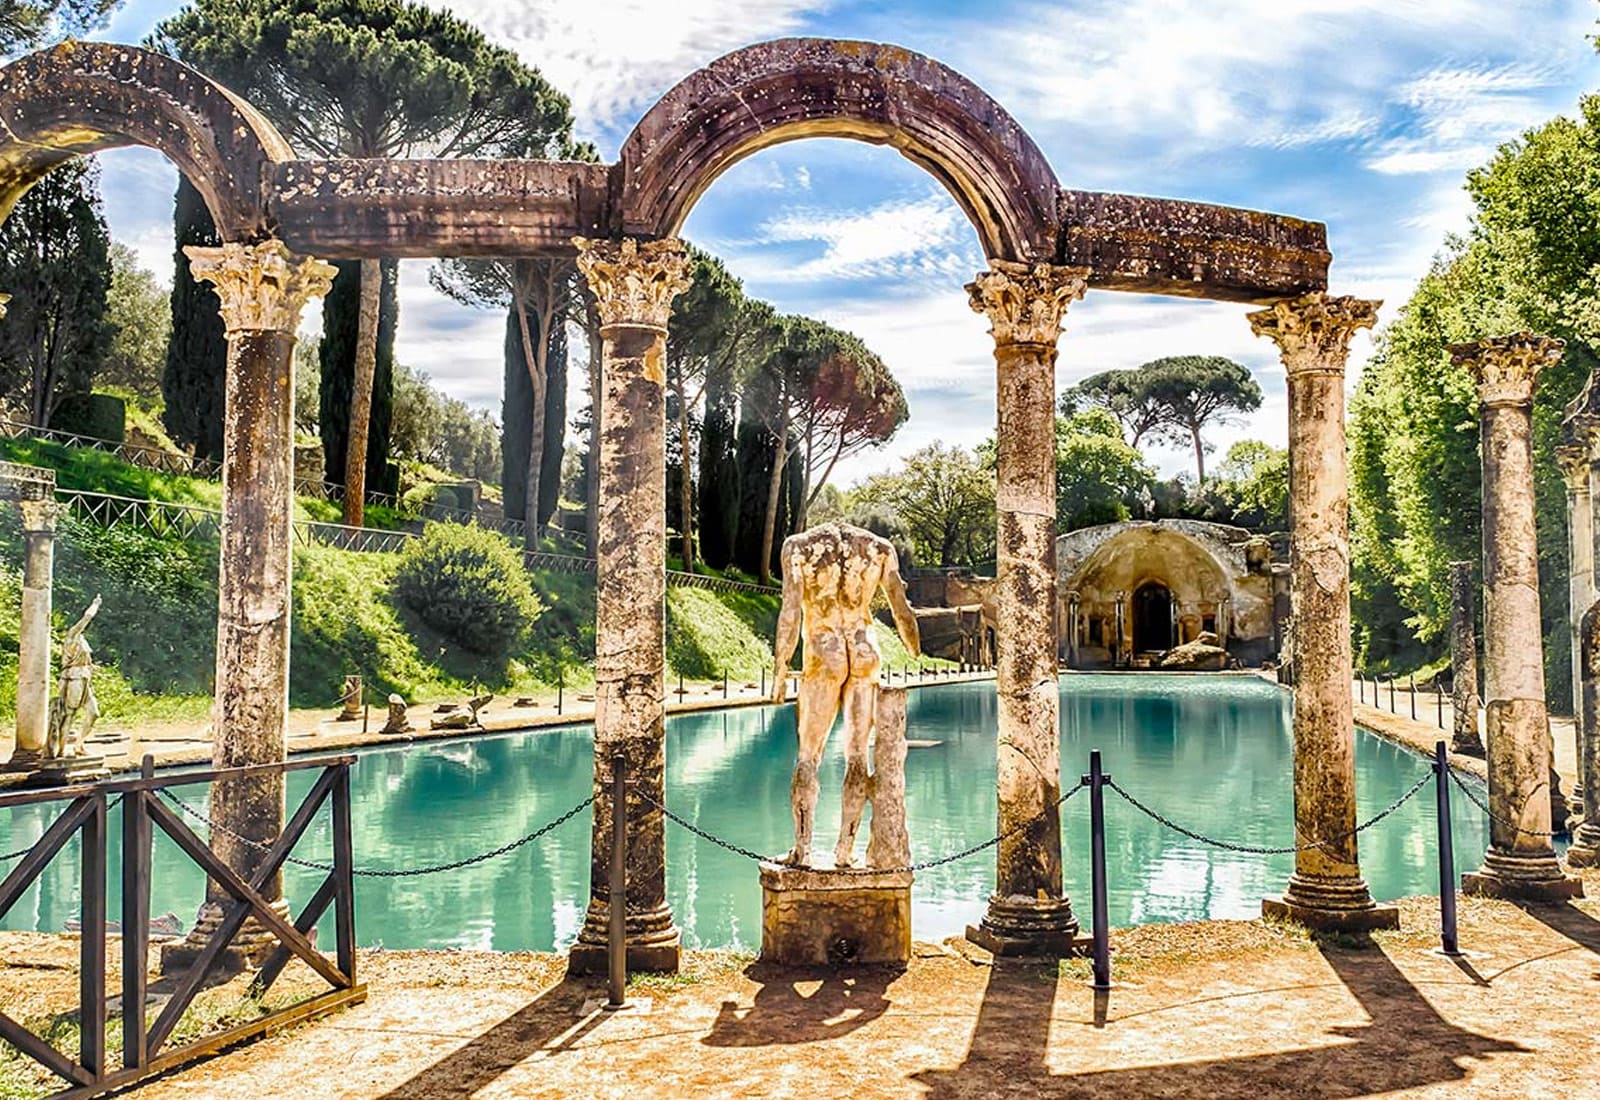 Tivoli: Villa d'Este & Hadrian's Villa - Day Trip from Rome